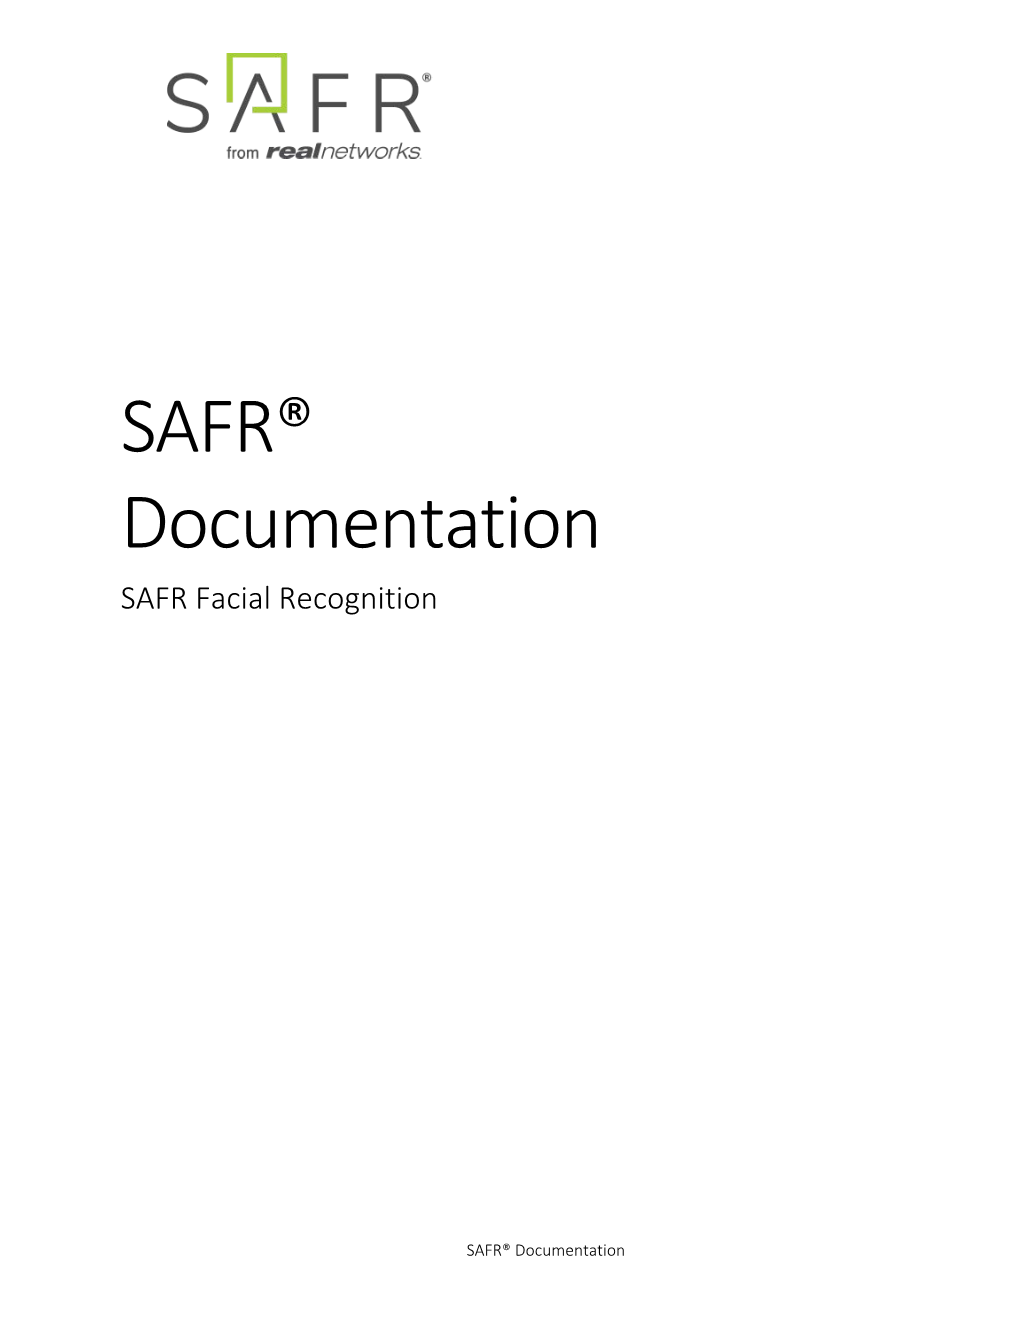 SAFR® Documentation SAFR Facial Recognition